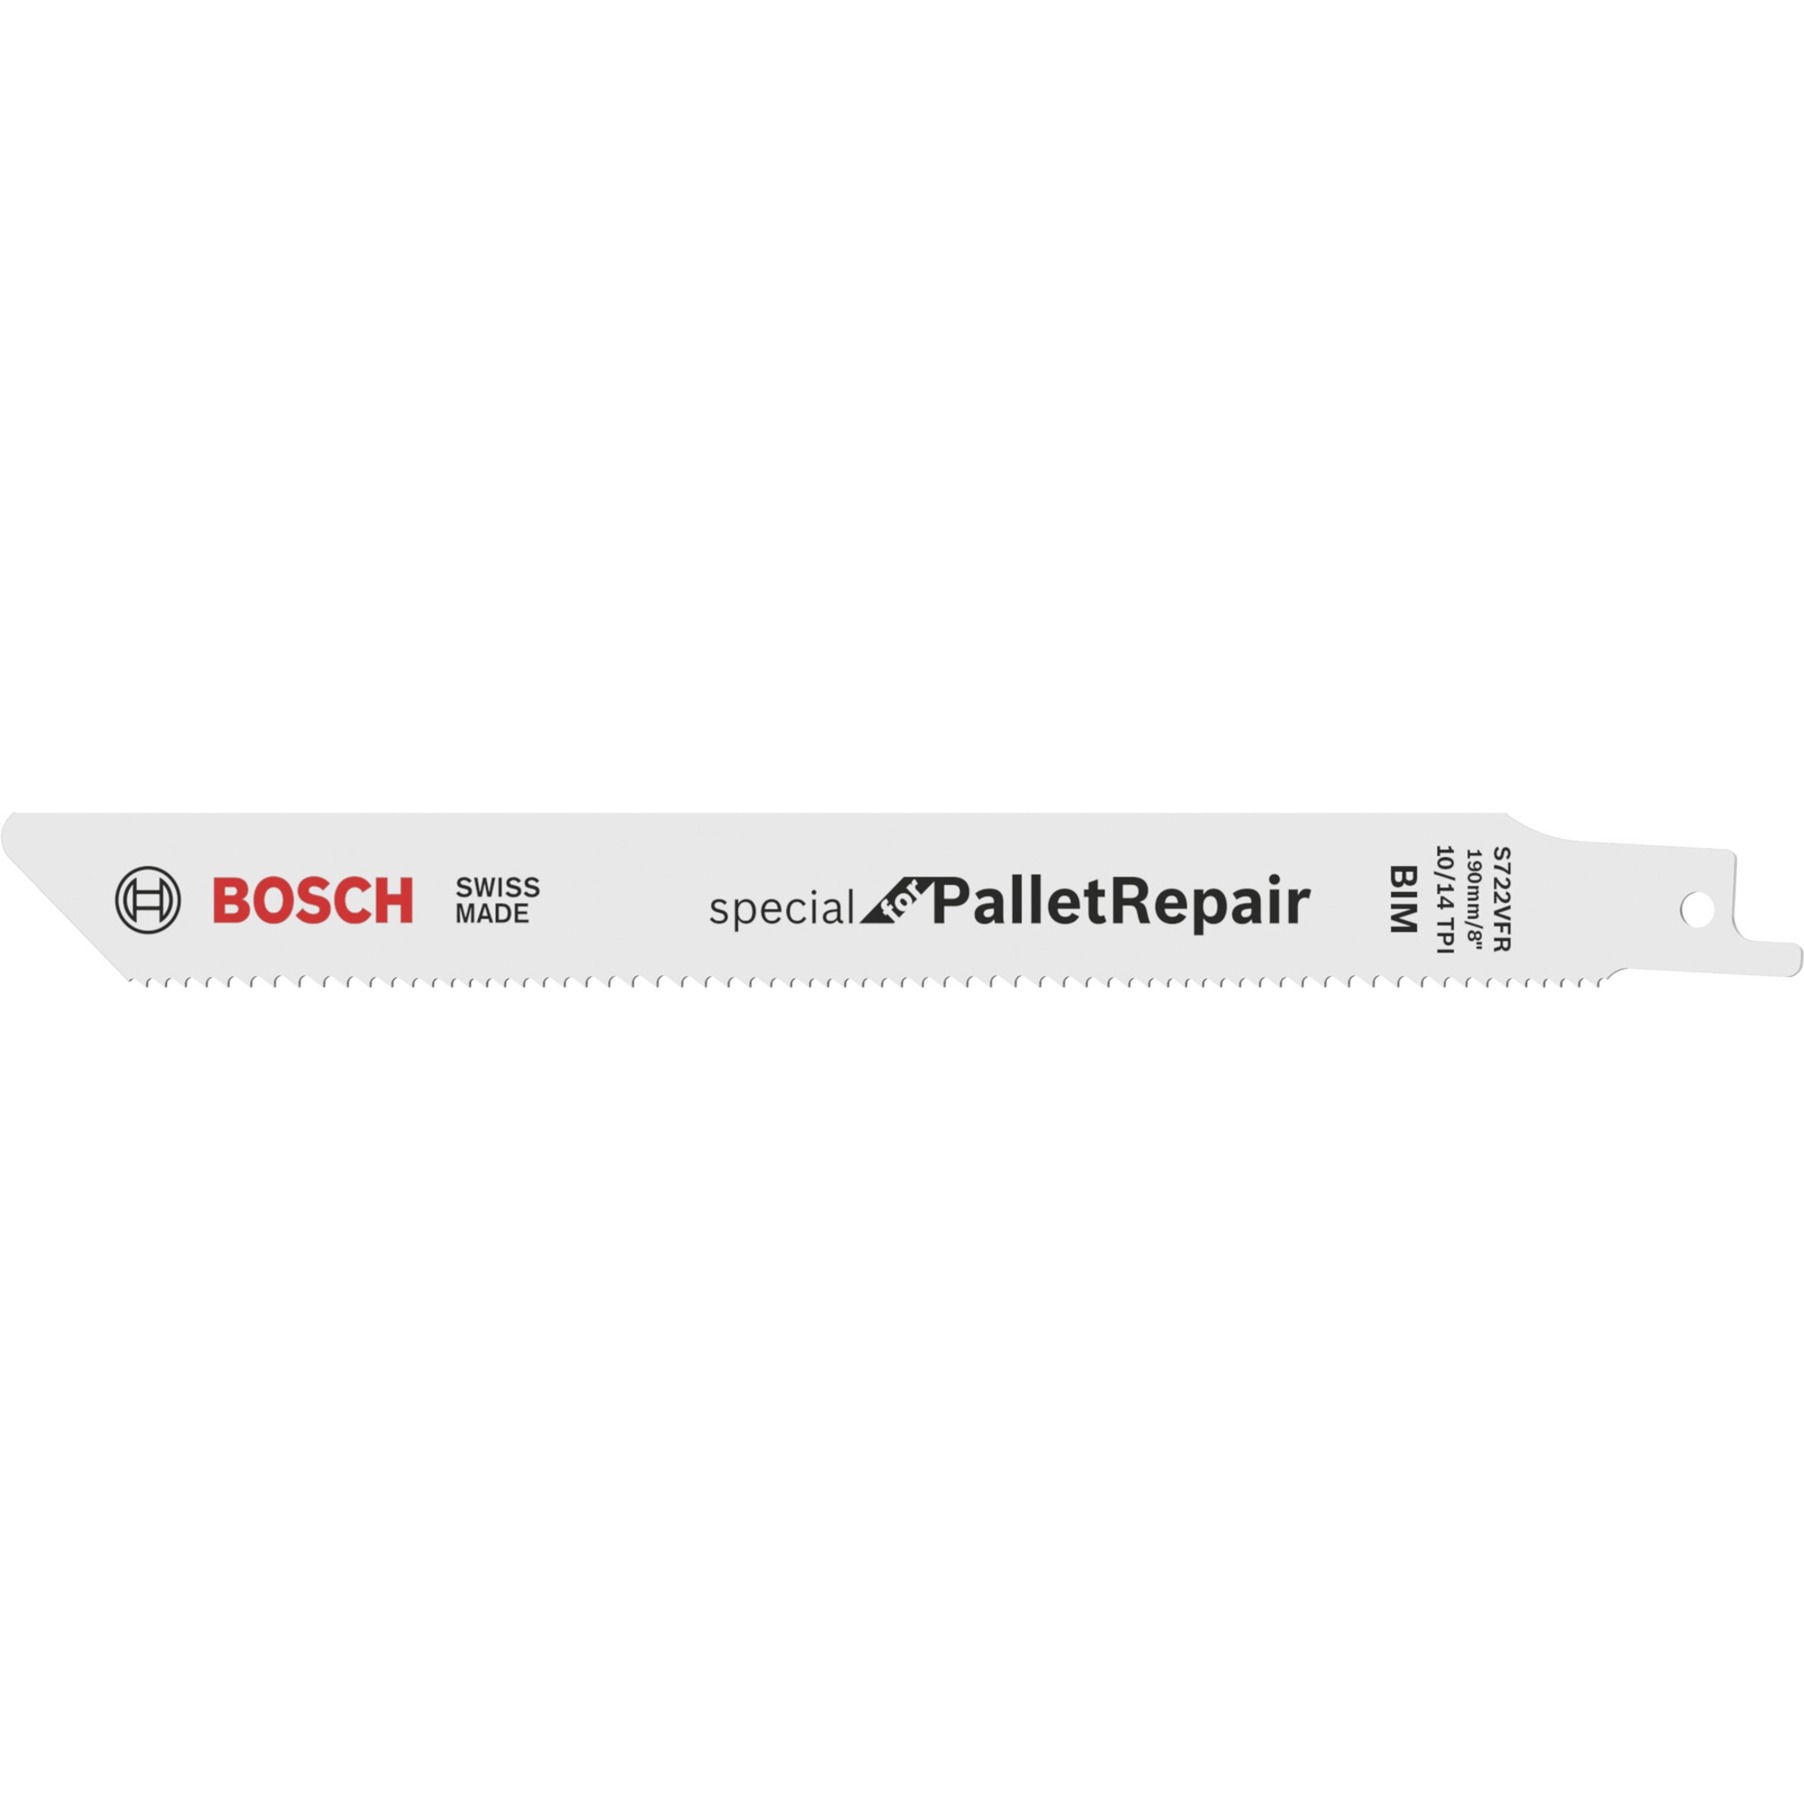 Säbelsägeblatt S 722 VFR Special for Pallet Repair, 100 Stück von Bosch